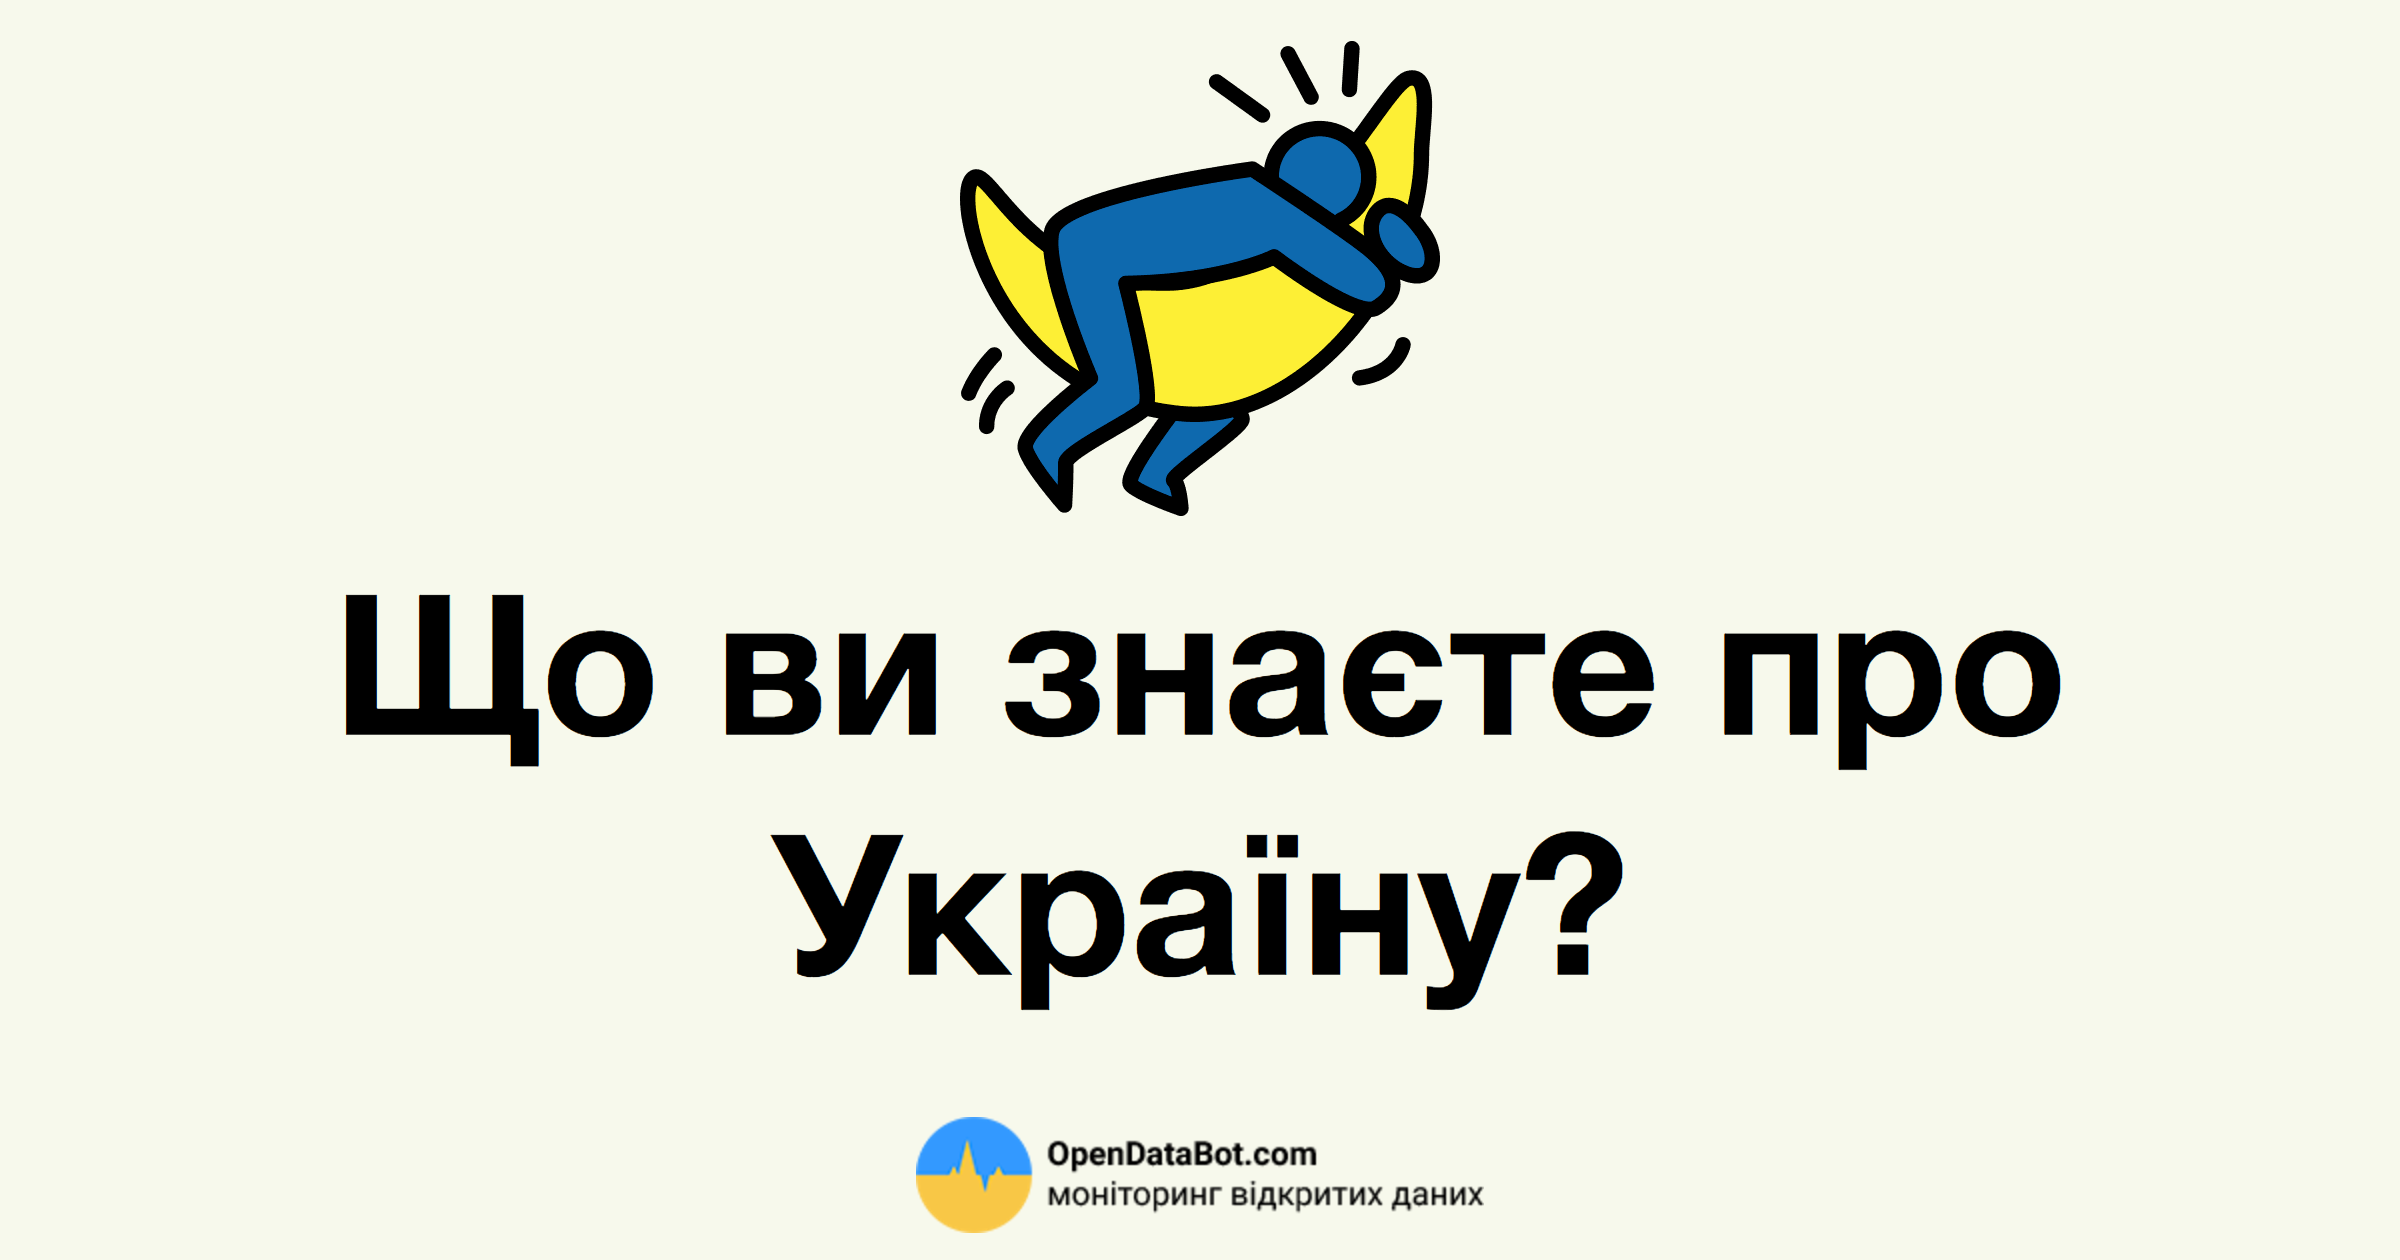 Тест: Что вы знаете об Украине